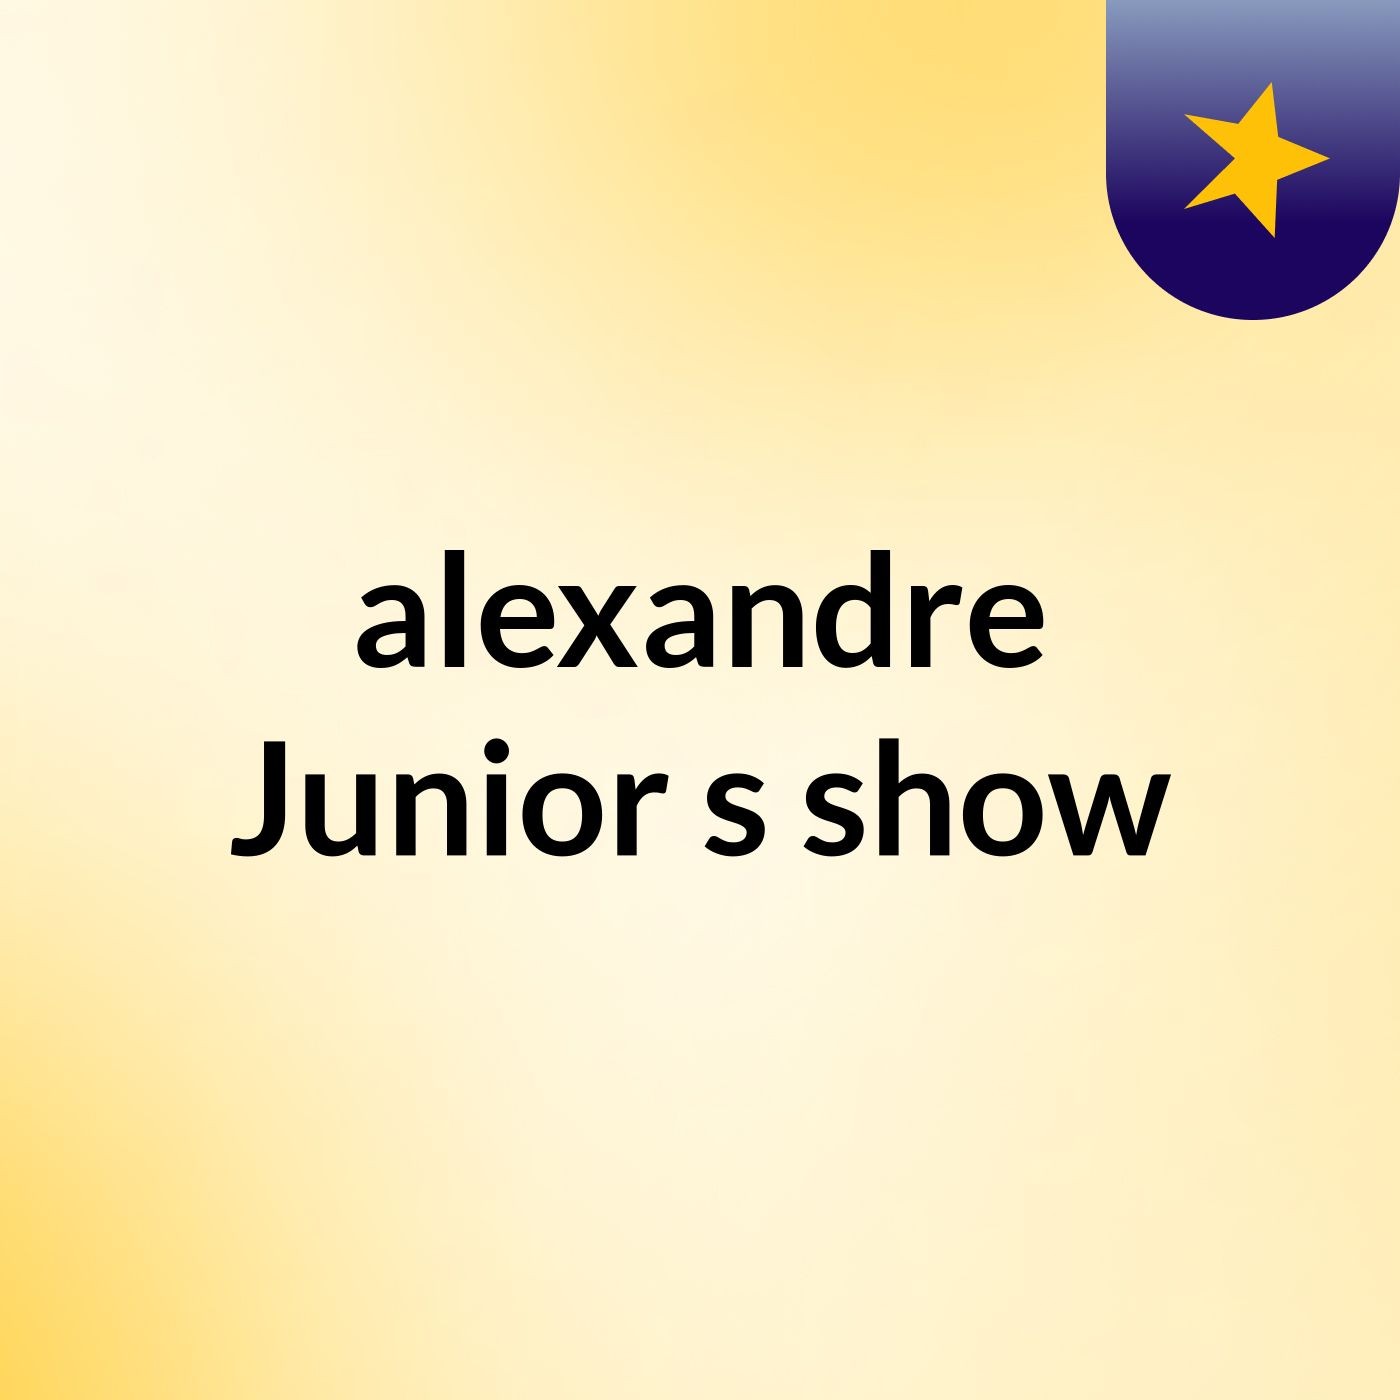 Episódio 11 - alexandre Junior's show